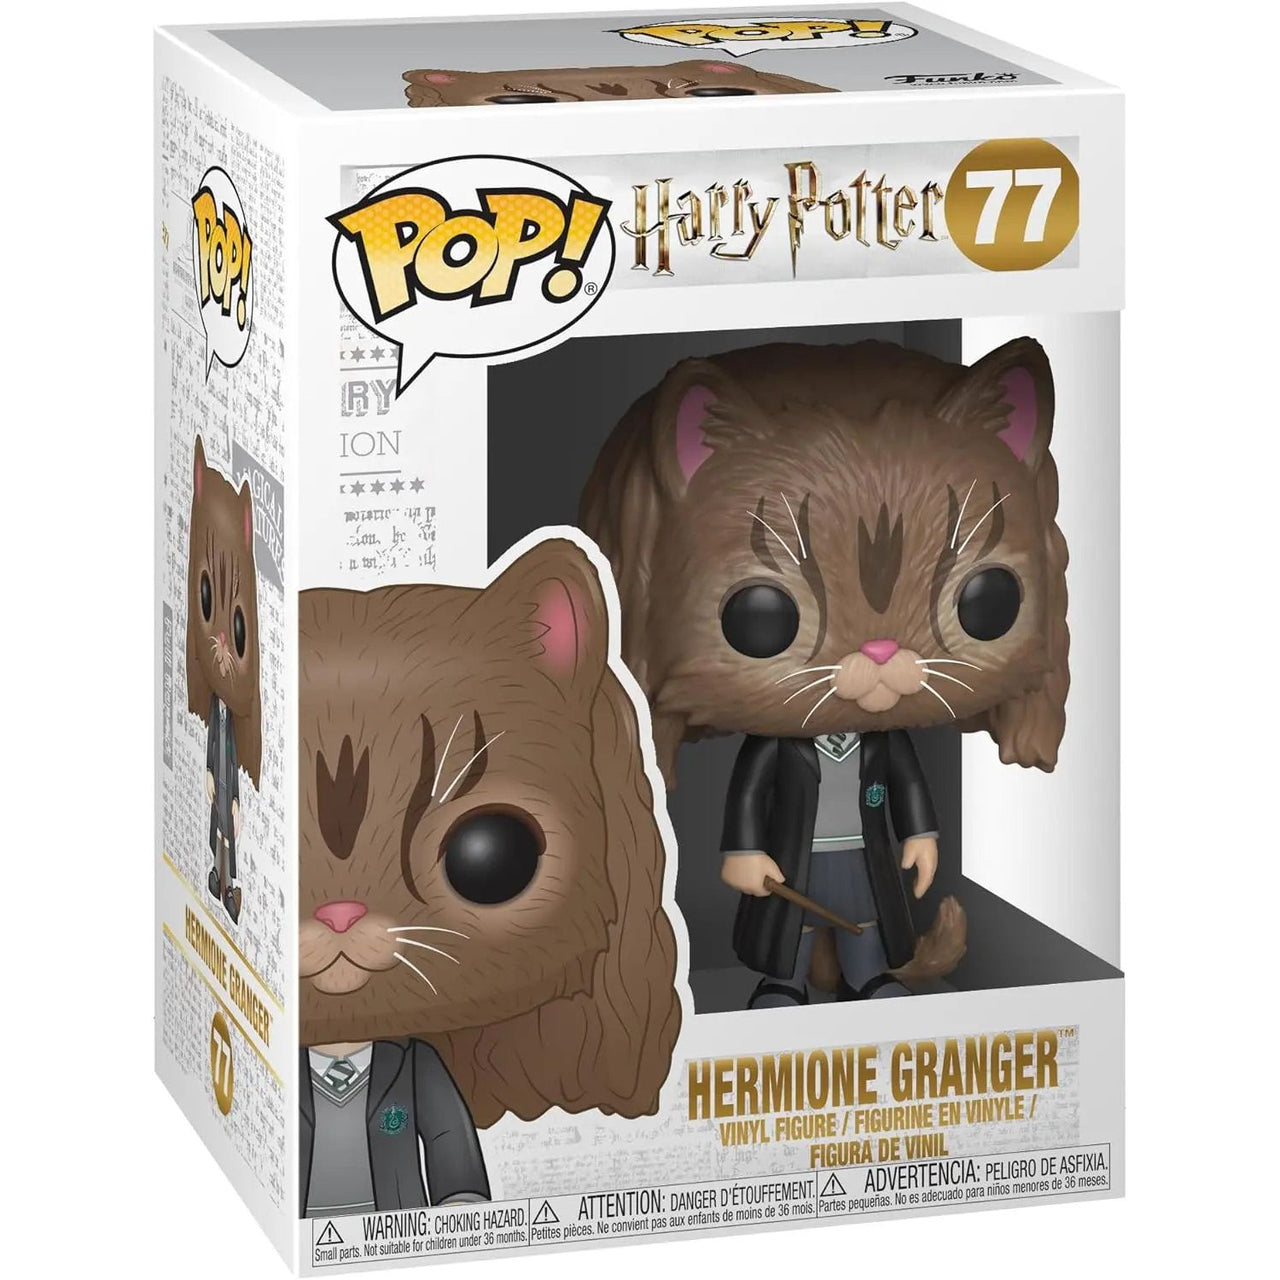 Funko Pop! Harry Potter 77 Hermione Granger as Cat Funko